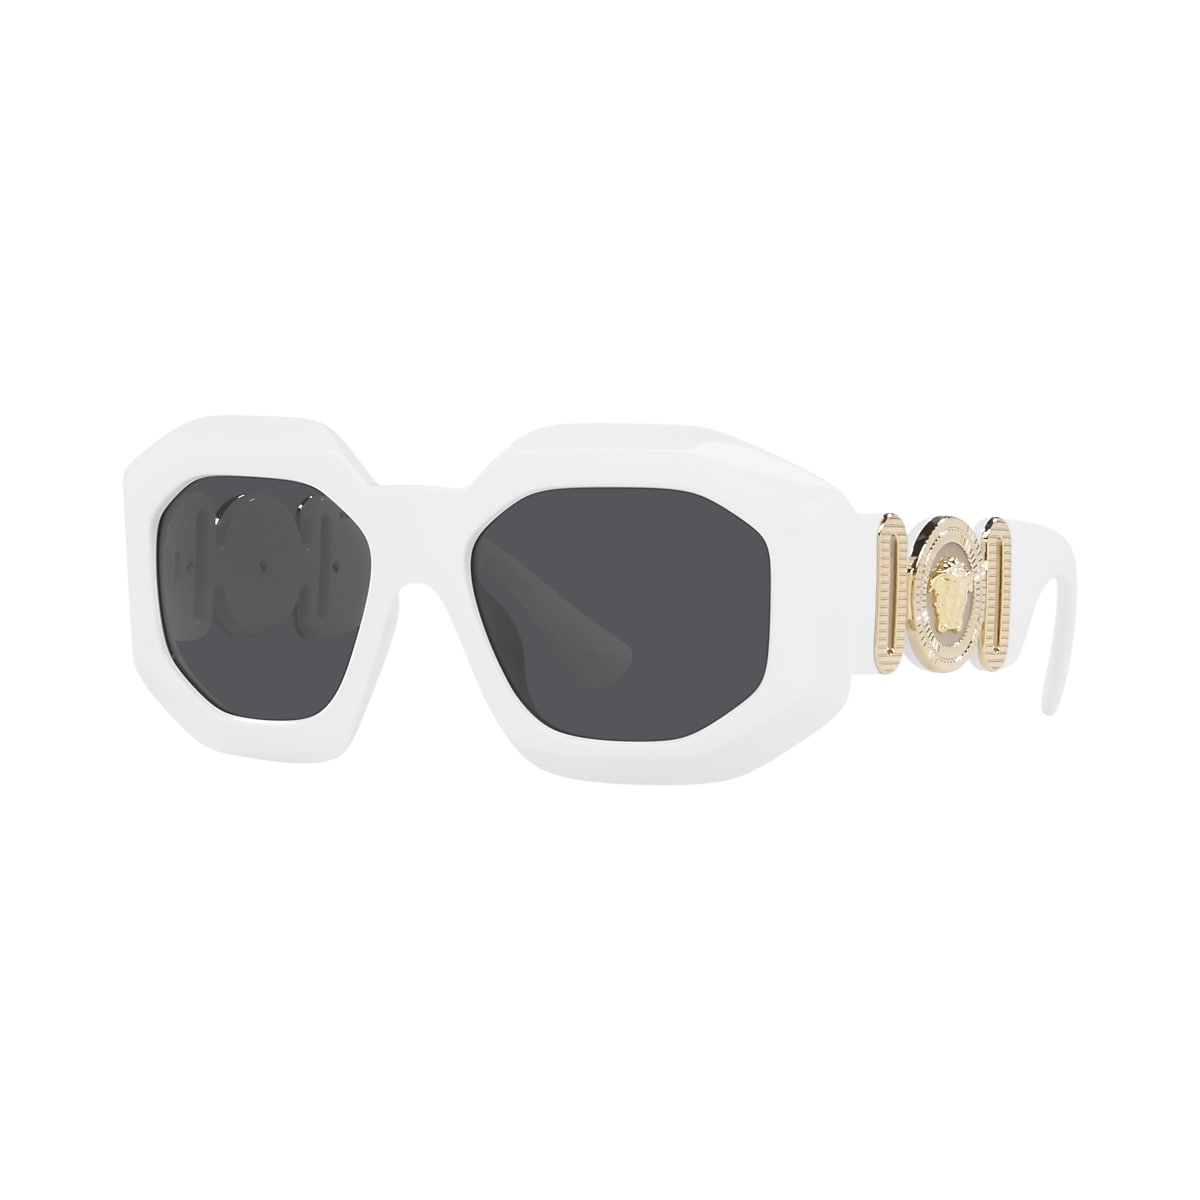 VERSACE VE4424U White - Women Luxury Sunglasses, Dark Grey Lens